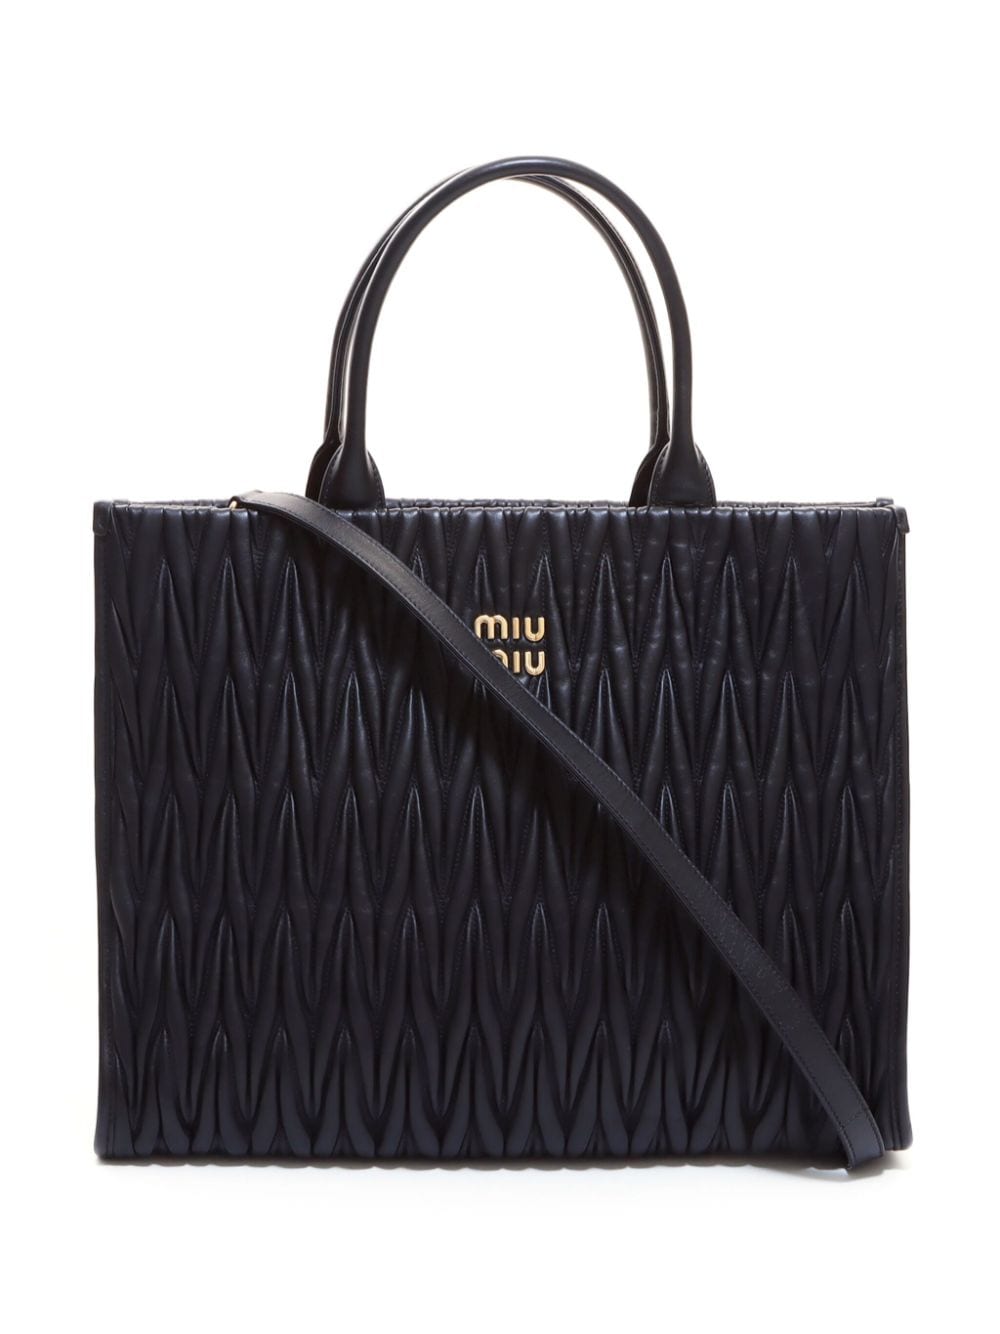 Pre-owned Miu Miu Matelasse Two-way Handbag In Black